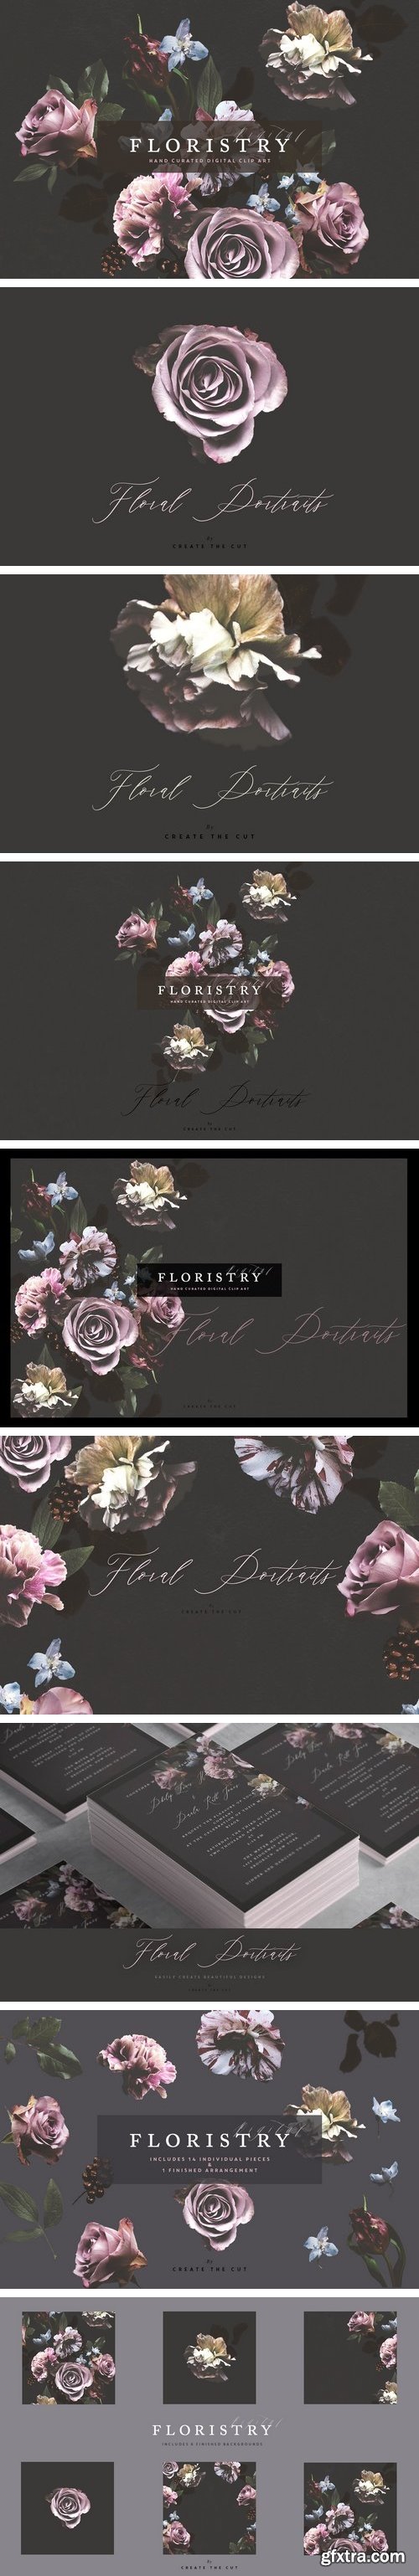 CM - Digital Floristry - Floral Portraits 2076806